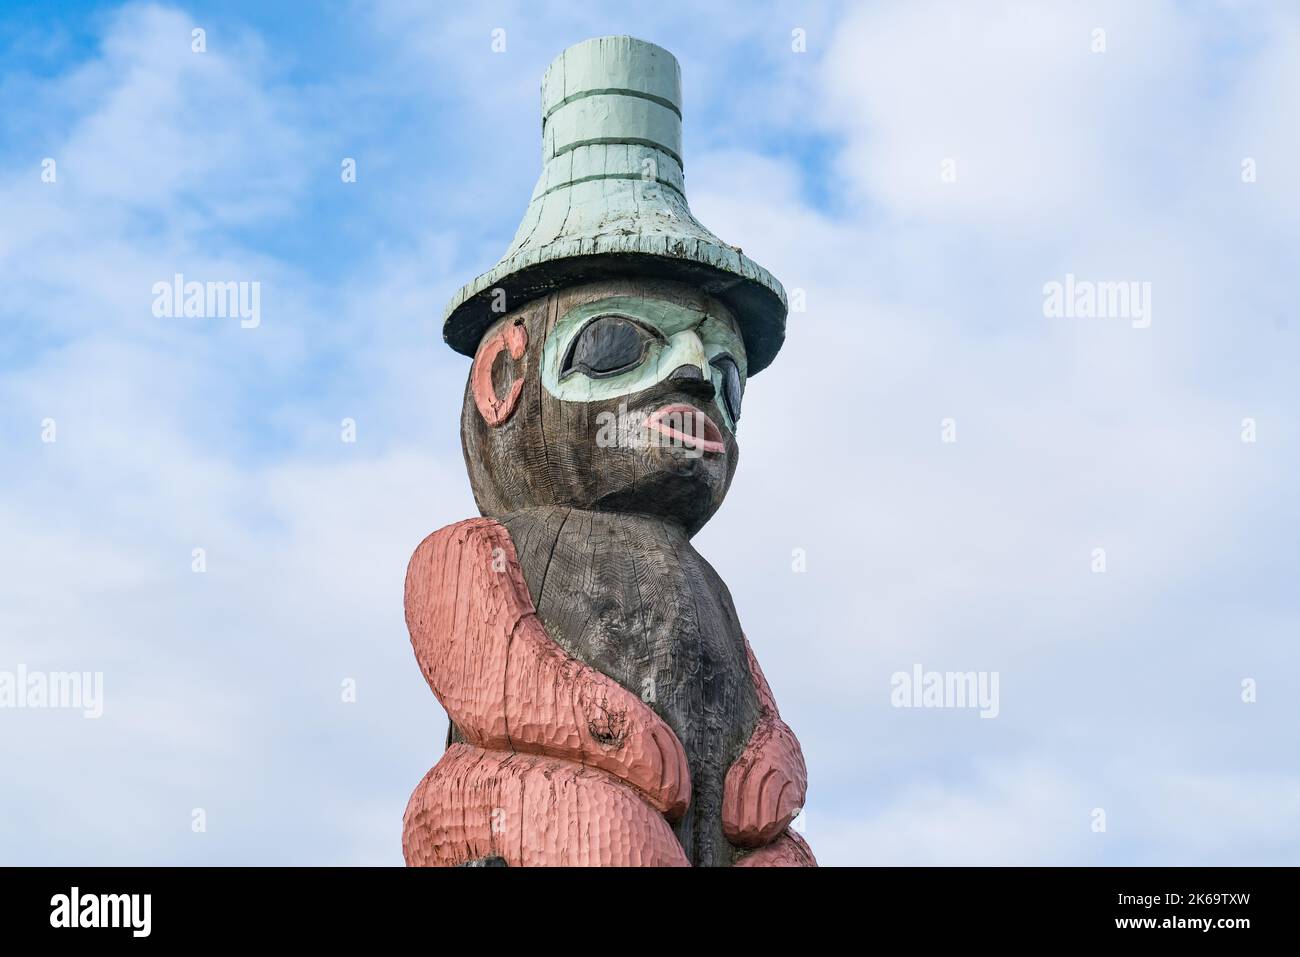 Native Alaskan Totem Pole Figure in Anchorage, Alaska Stock Photo